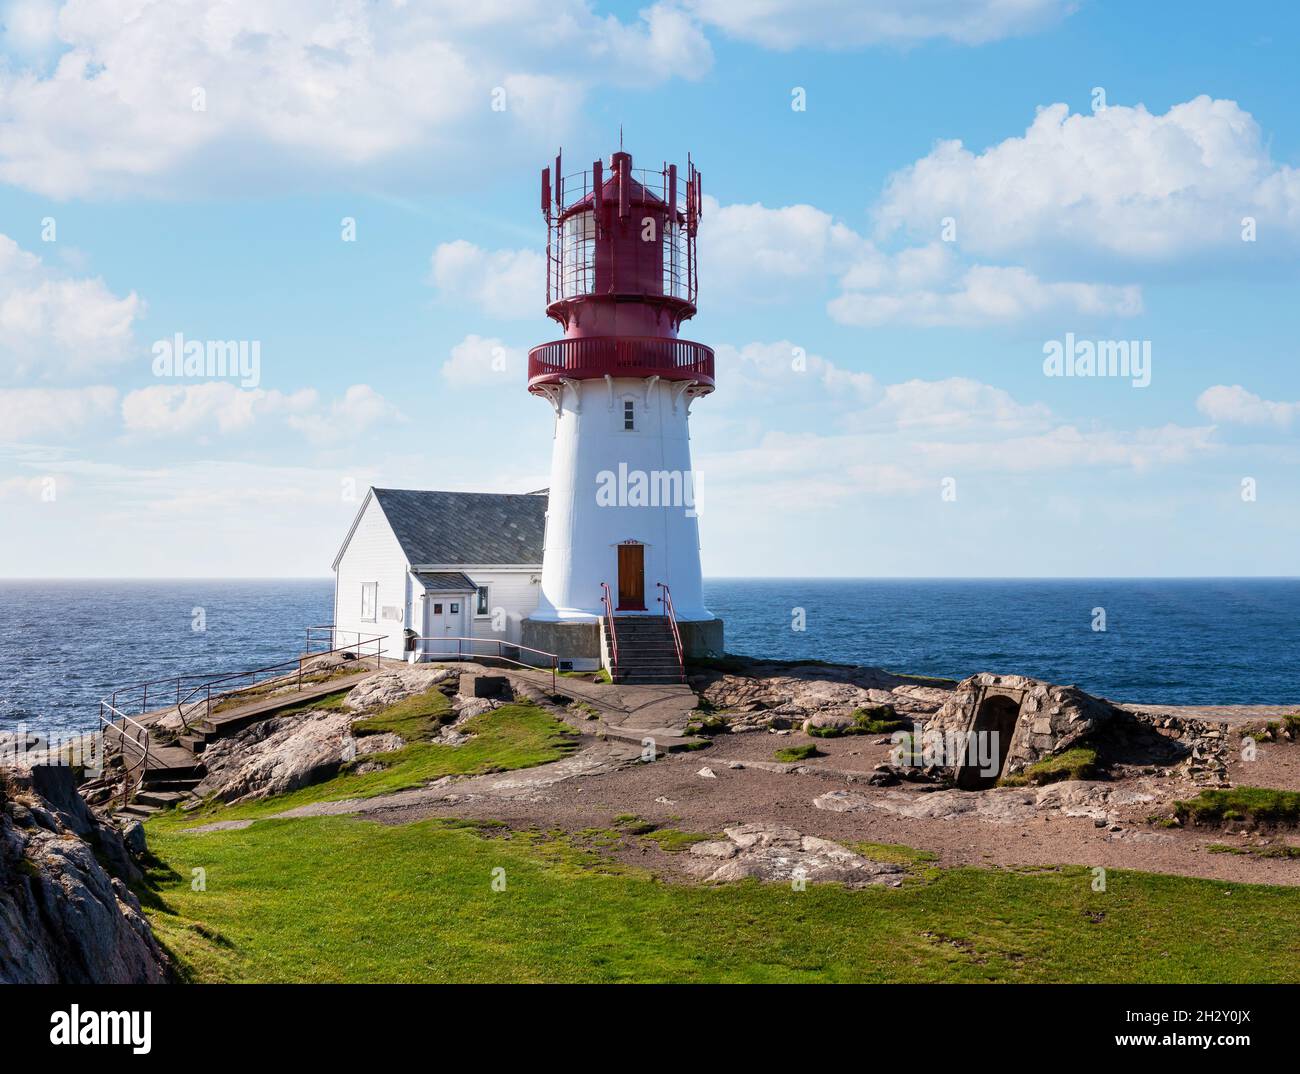 Paysage côtier au phare de Lindesnes, Sea and Rocks, pointe sud de la Norvège continentale Banque D'Images